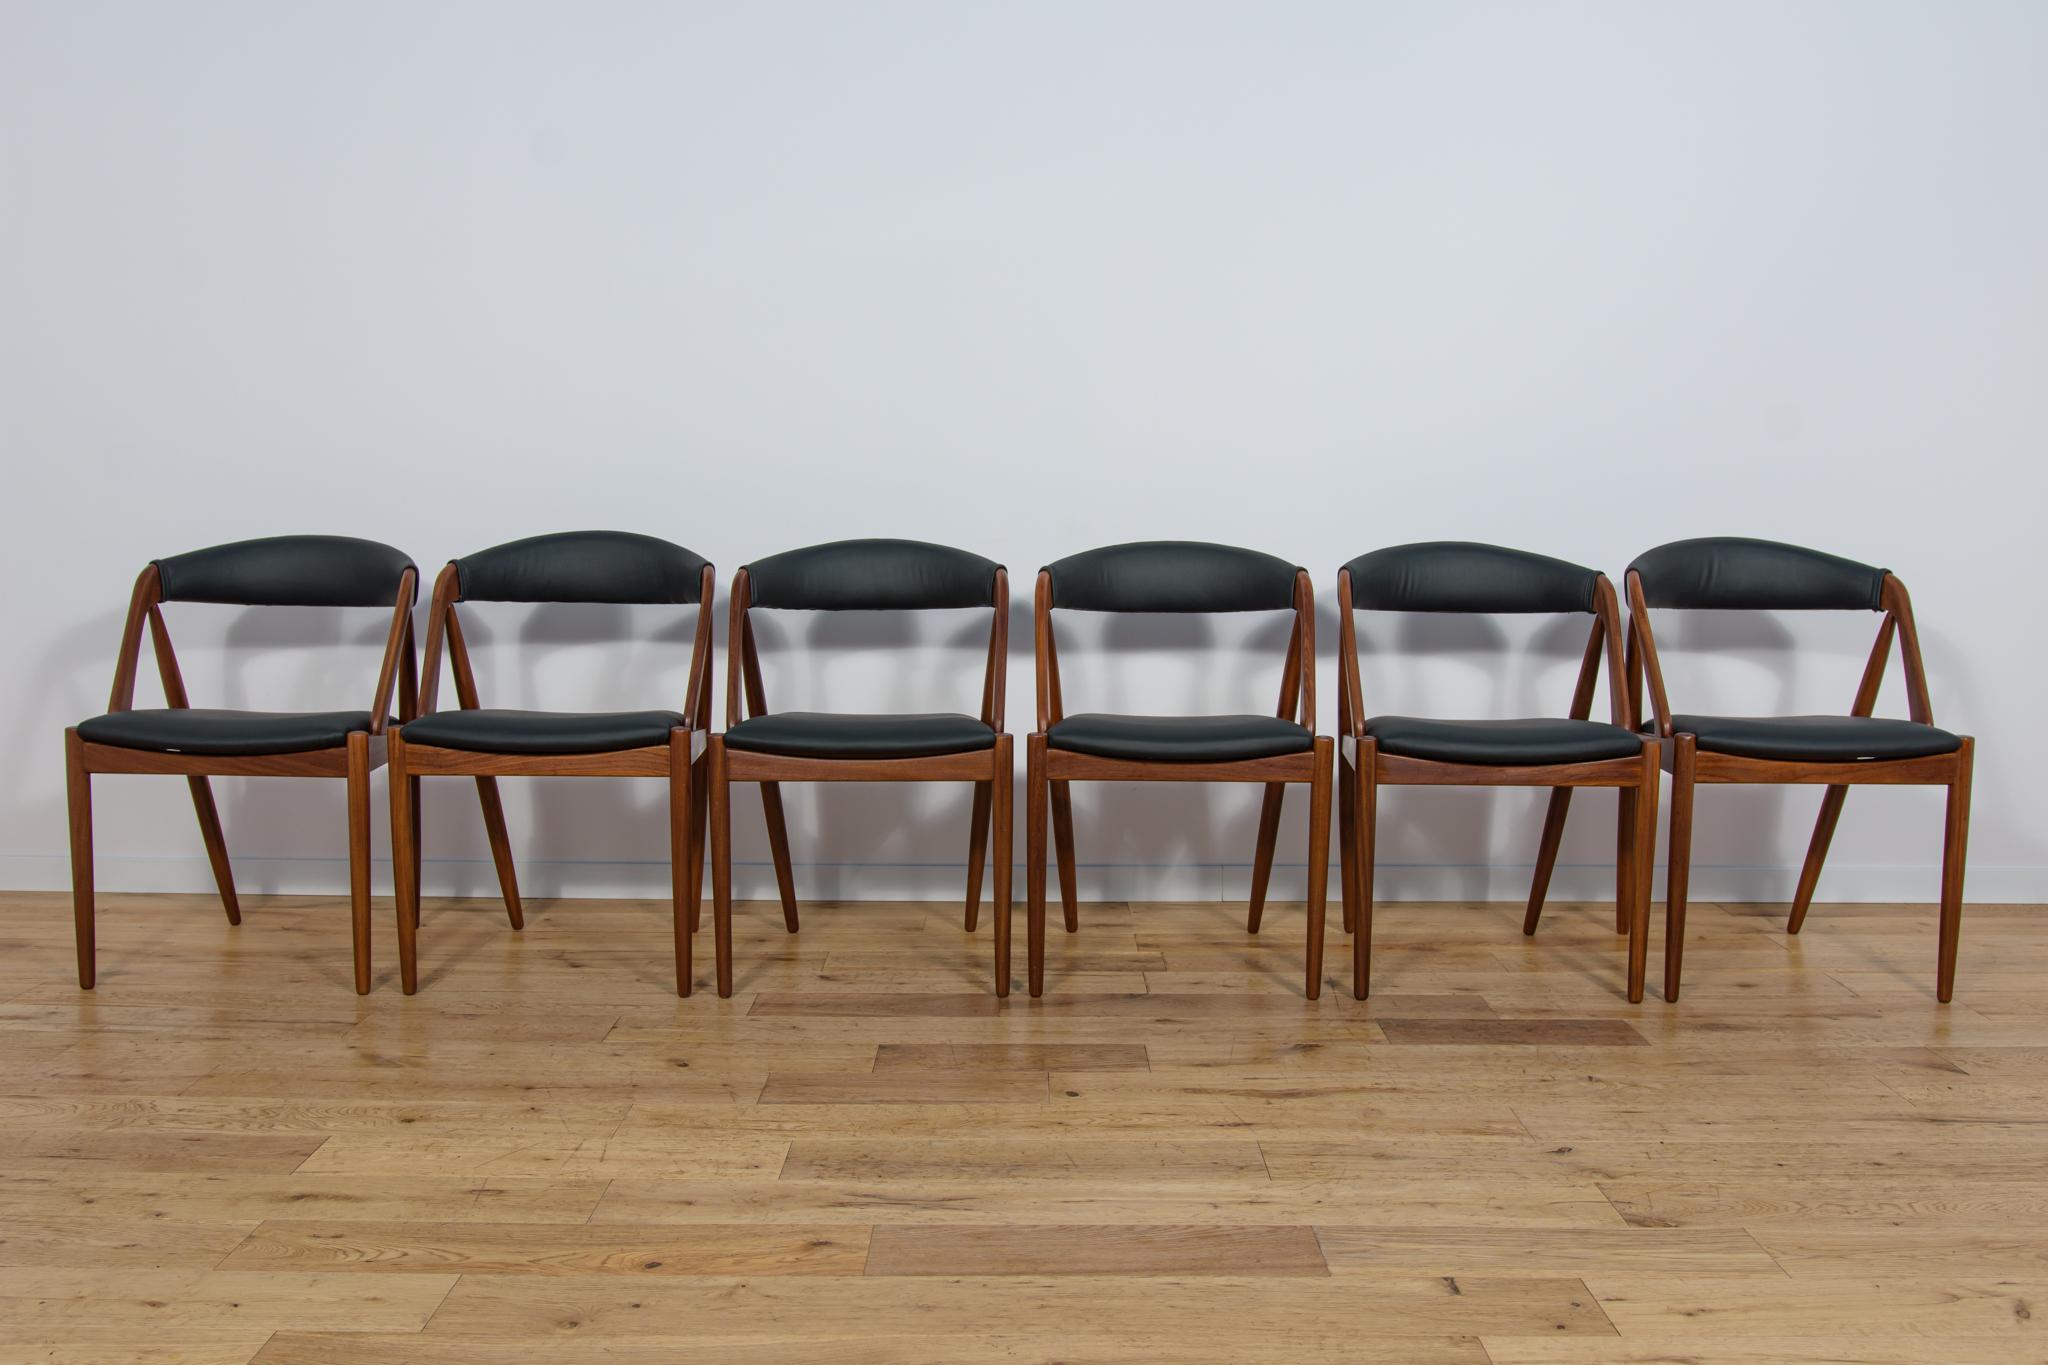 Un ensemble de six chaises Modèle 31 conçues par Kai Kristiansen pour la manufacture danoise Schou-Andersens Møbelfabrik dans les années 1960. Cadre en bois de teck. Entièrement restauré. Le bois a été nettoyé de l'ancienne couche de vernis et